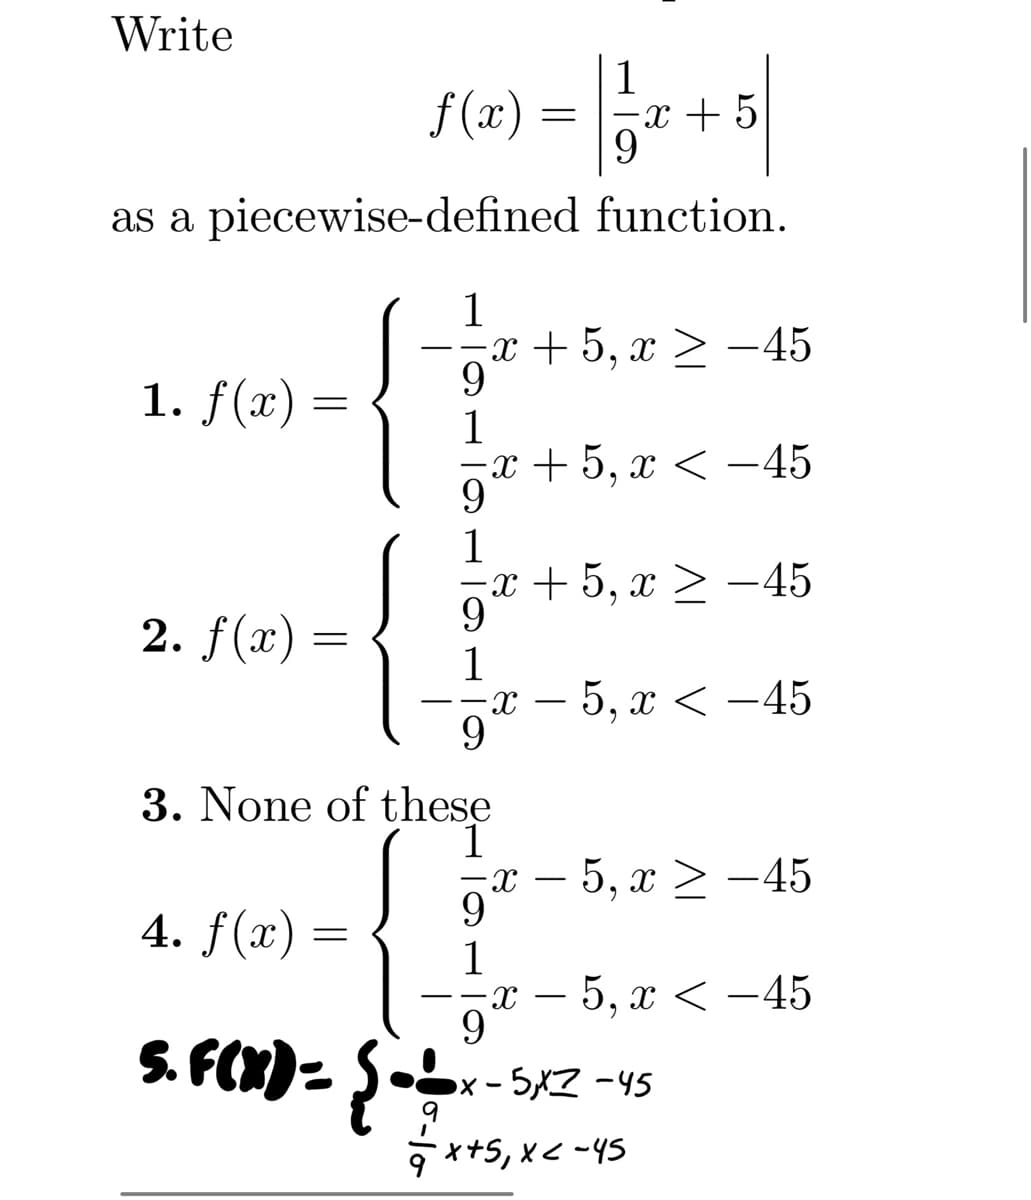 Write
ƒ(x) = 1/3
=x+5
9
as a piecewise-defined function.
1. f(x)
=
2. f(x) =
1
·x+5, x ≥ −45
9
1
=x+5, x < −45
9
1
·x + 5, x ≥ −45
9
1
9
3. None of these
4. f(x) =
5. F(X) = { = =-=-
X
x − 5, x ≥ −45
9
1
9
5, x < -45
x − 5, x < −45
x-5,X7-45
+ ²x+5₁ x < -45